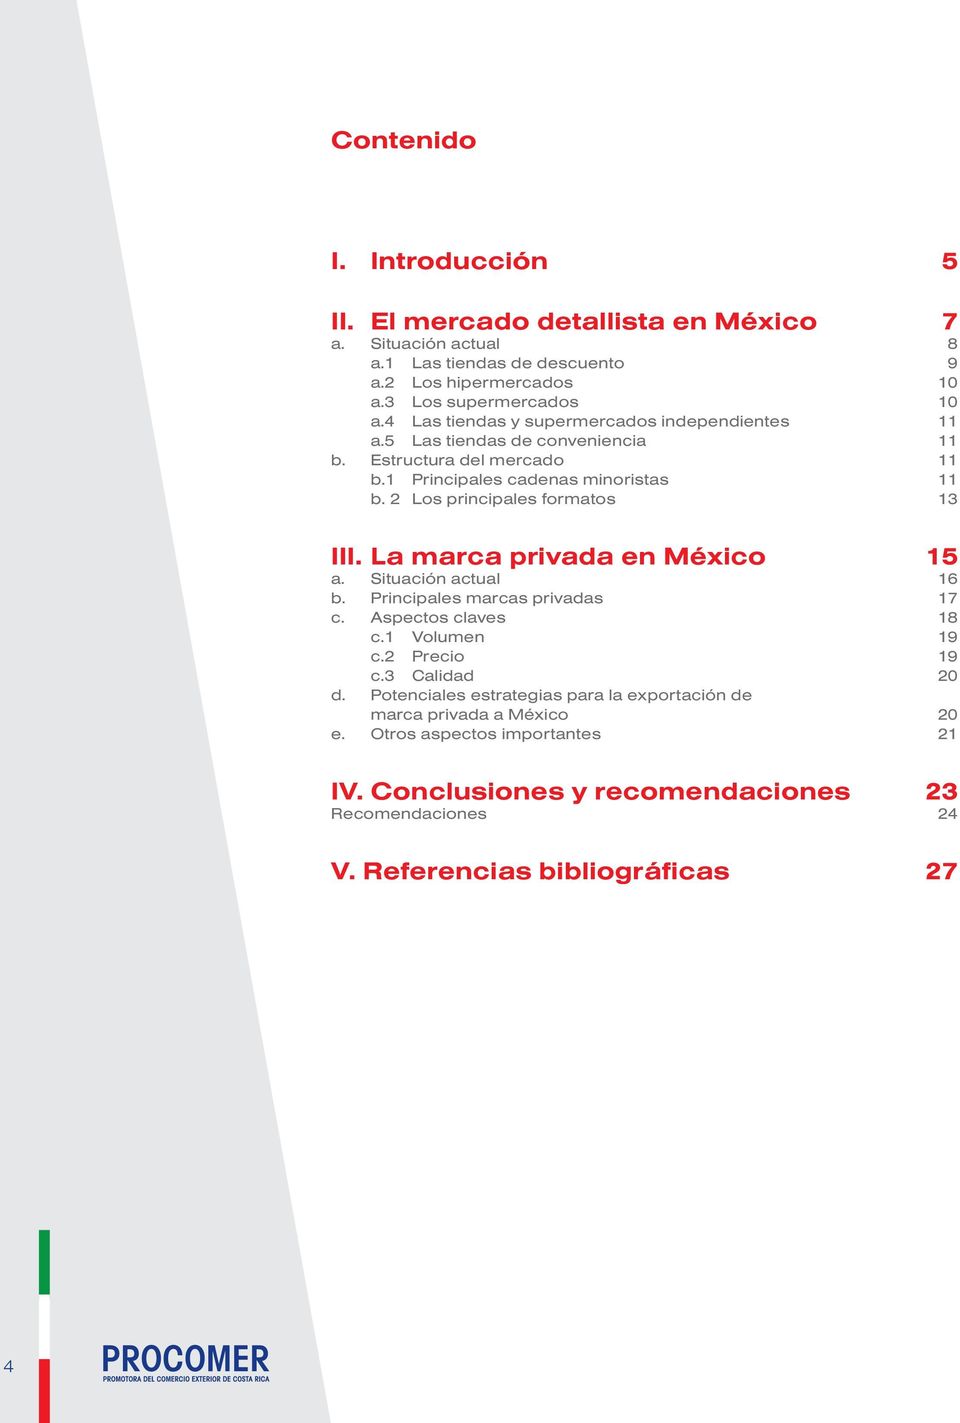 2 Los principales formatos 13 III. La marca privada en México 15 a. Situación actual 16 b. Principales marcas privadas 17 c. Aspectos claves 18 c.1 Volumen 19 c.2 Precio 19 c.